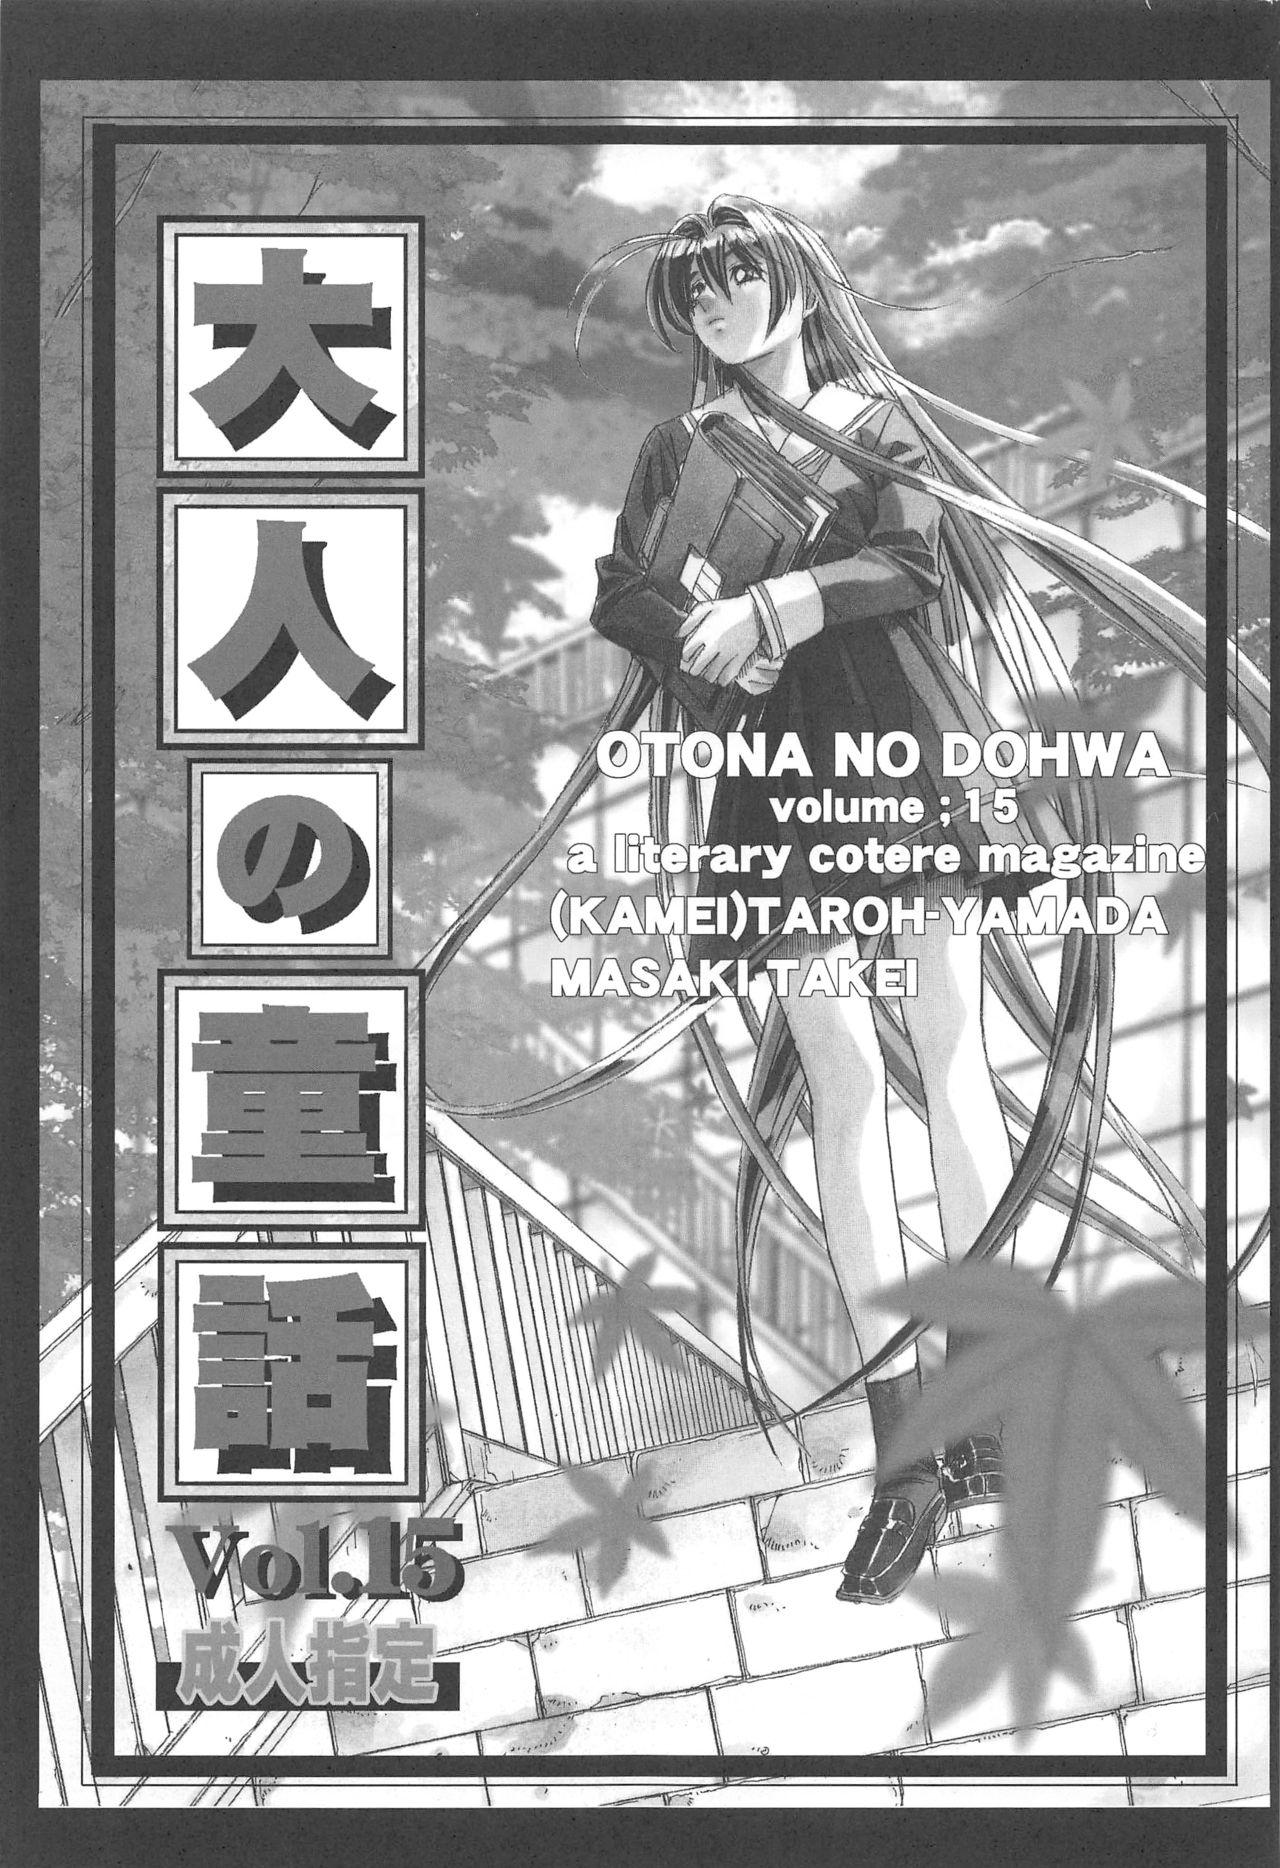 Otonano Do-wa Vol. 15 2